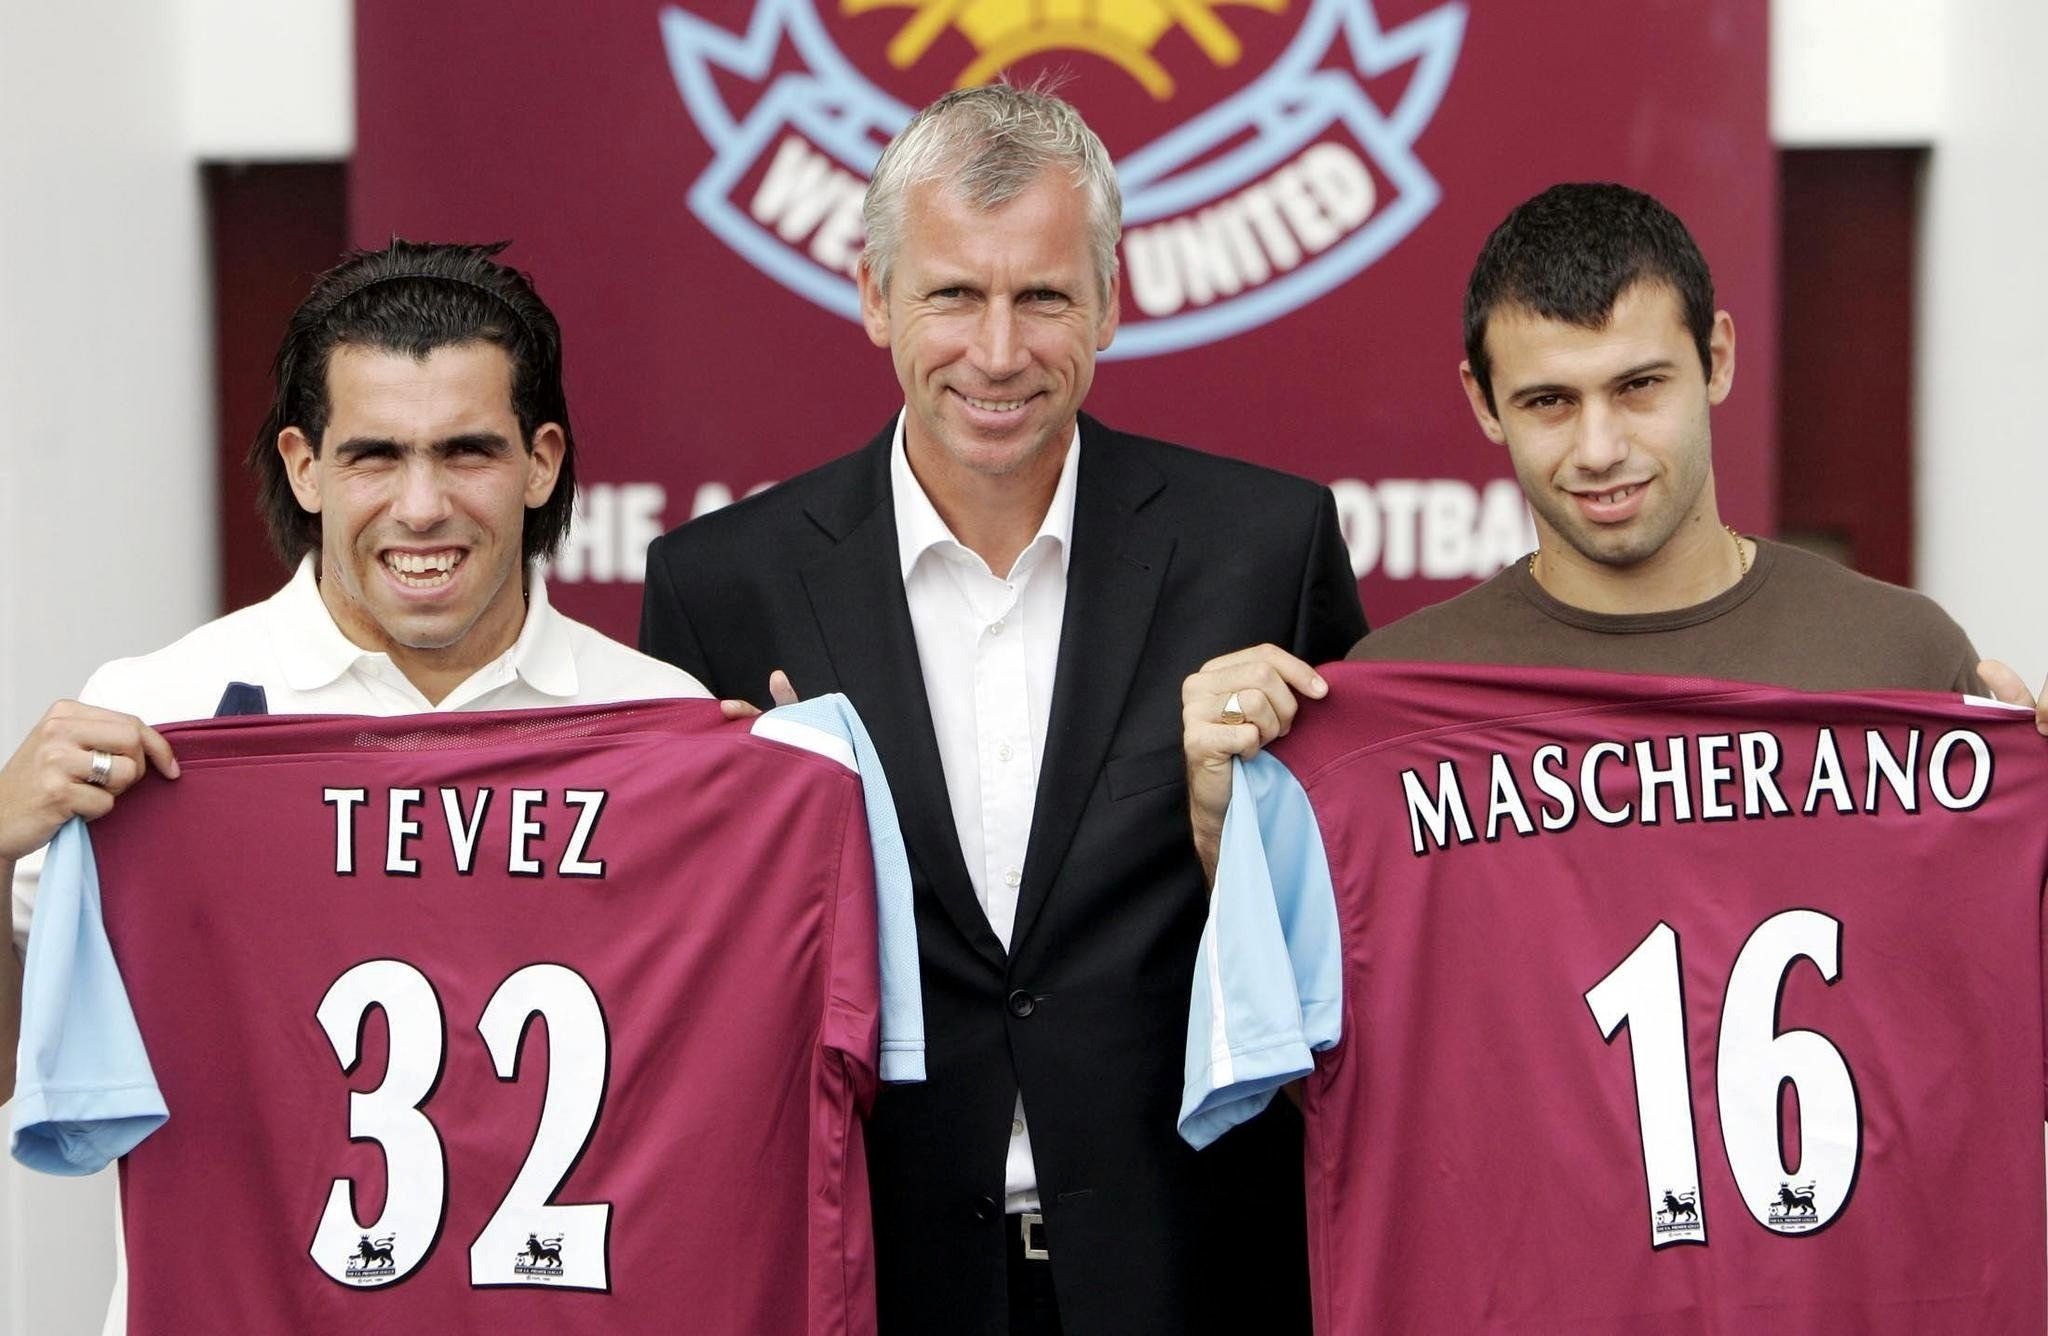 Carlos Tevez und Javier Mascherano schockierten die Welt, als sie 2006 bei West Ham unterschrieben